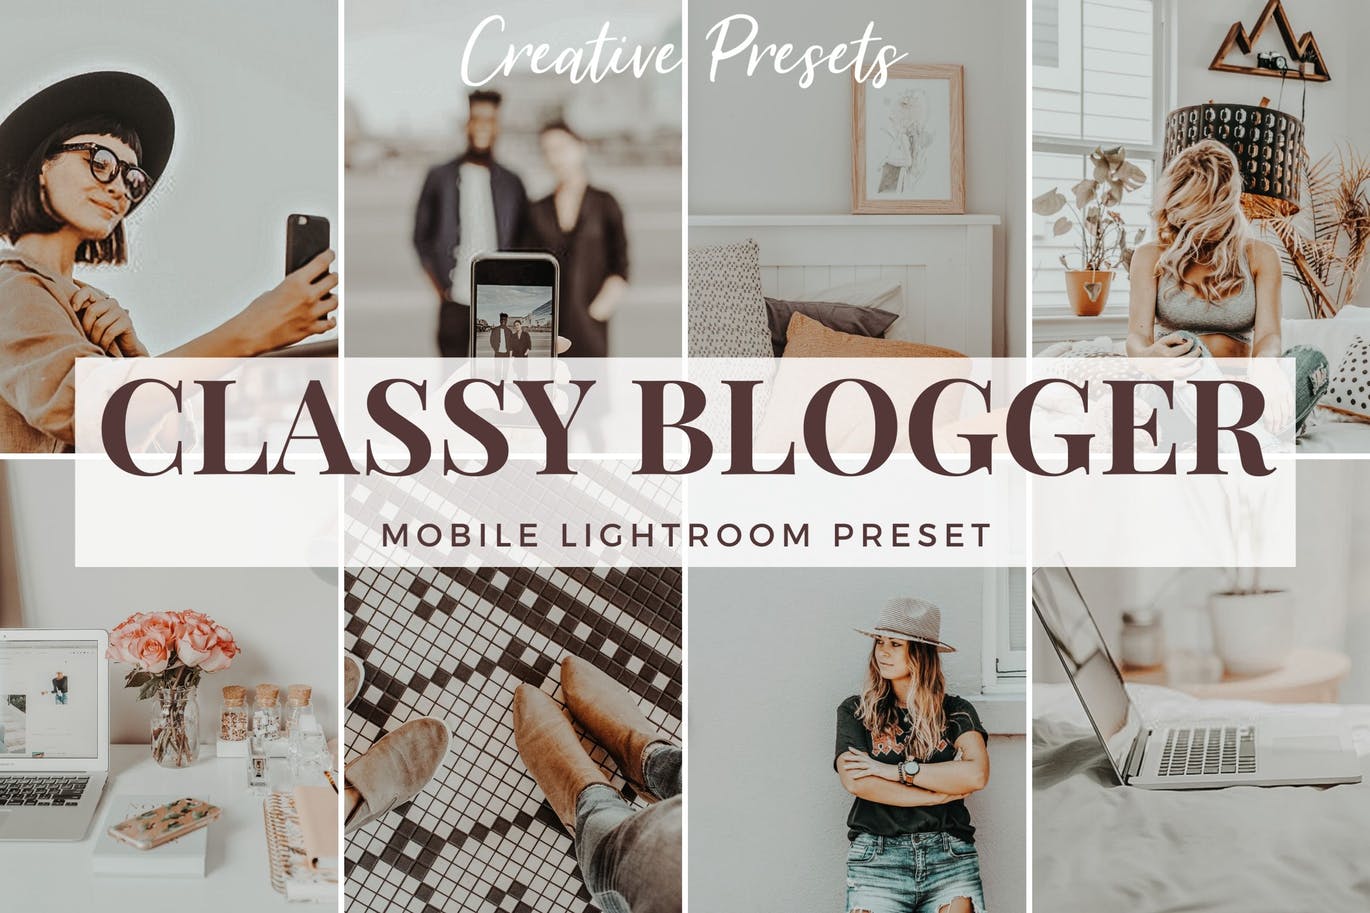 永恒经典照片风格调色滤镜大洋岛精选LR预设 Classy Blogger – Mobile Lightroom Preset插图